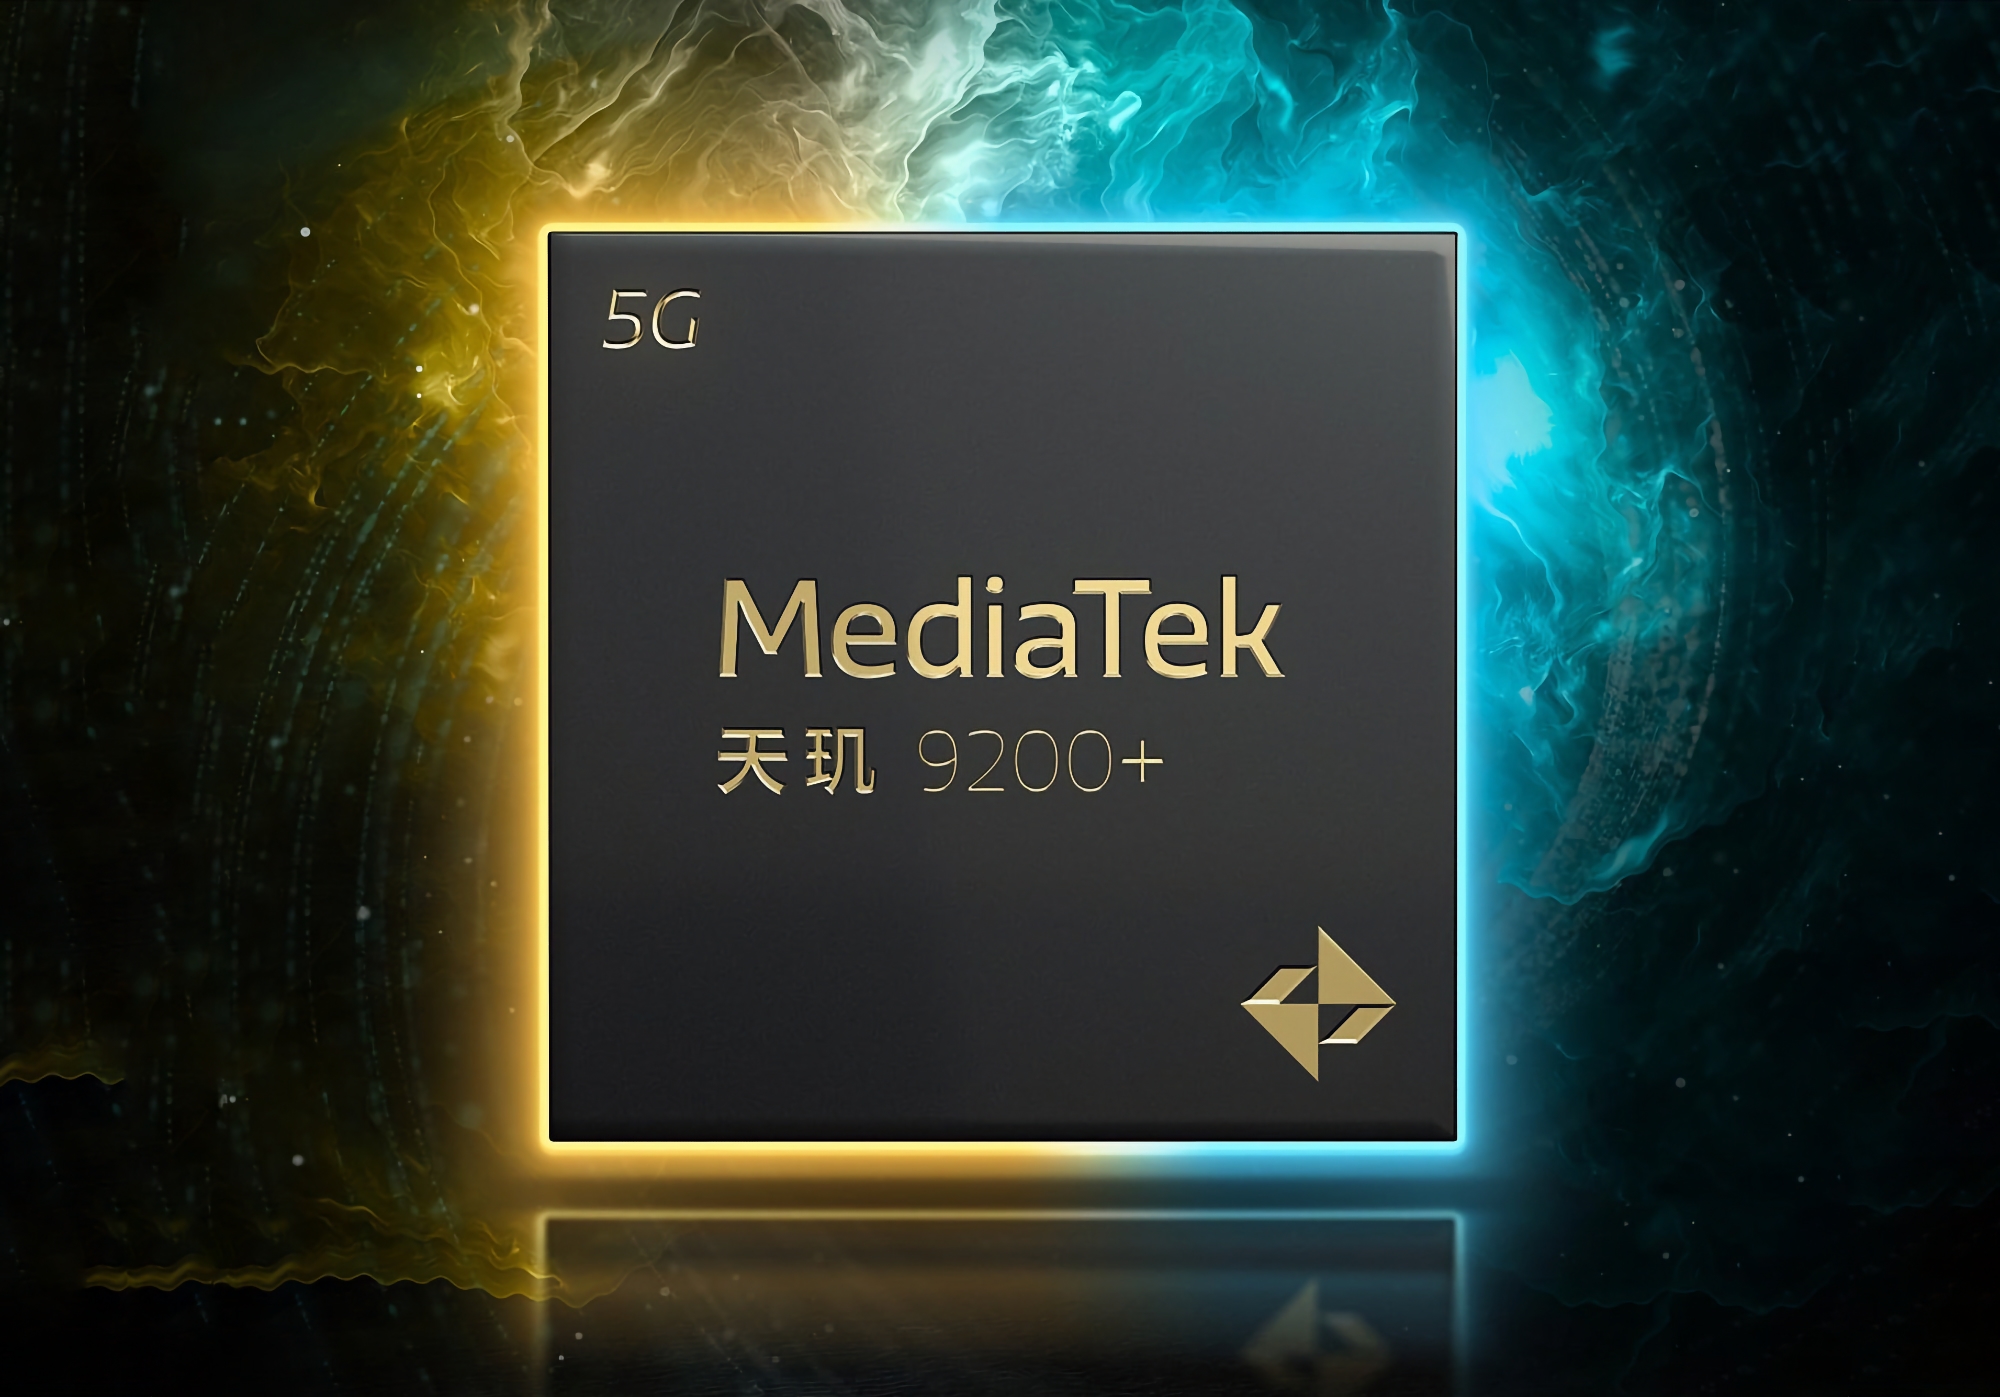 Het is officieel: MediaTek onthult nieuw vlaggenschip Dimensity 9200+ processor op 10 mei